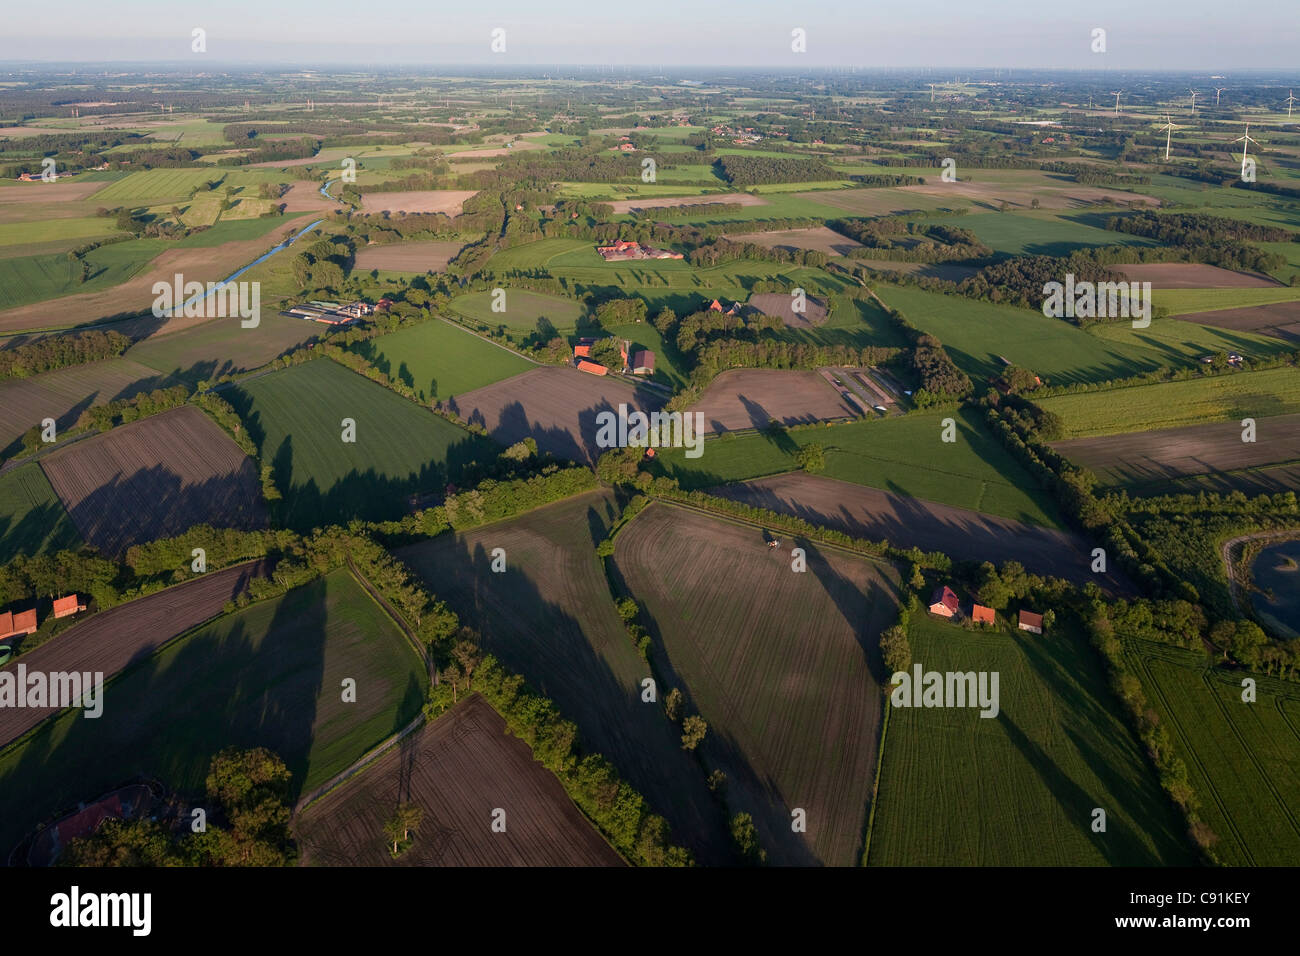 Vista aérea del típico paisaje del norte de Alemania con cubiertas de campos y cultivos agrícolas, Baja Sajonia, Alemania Foto de stock